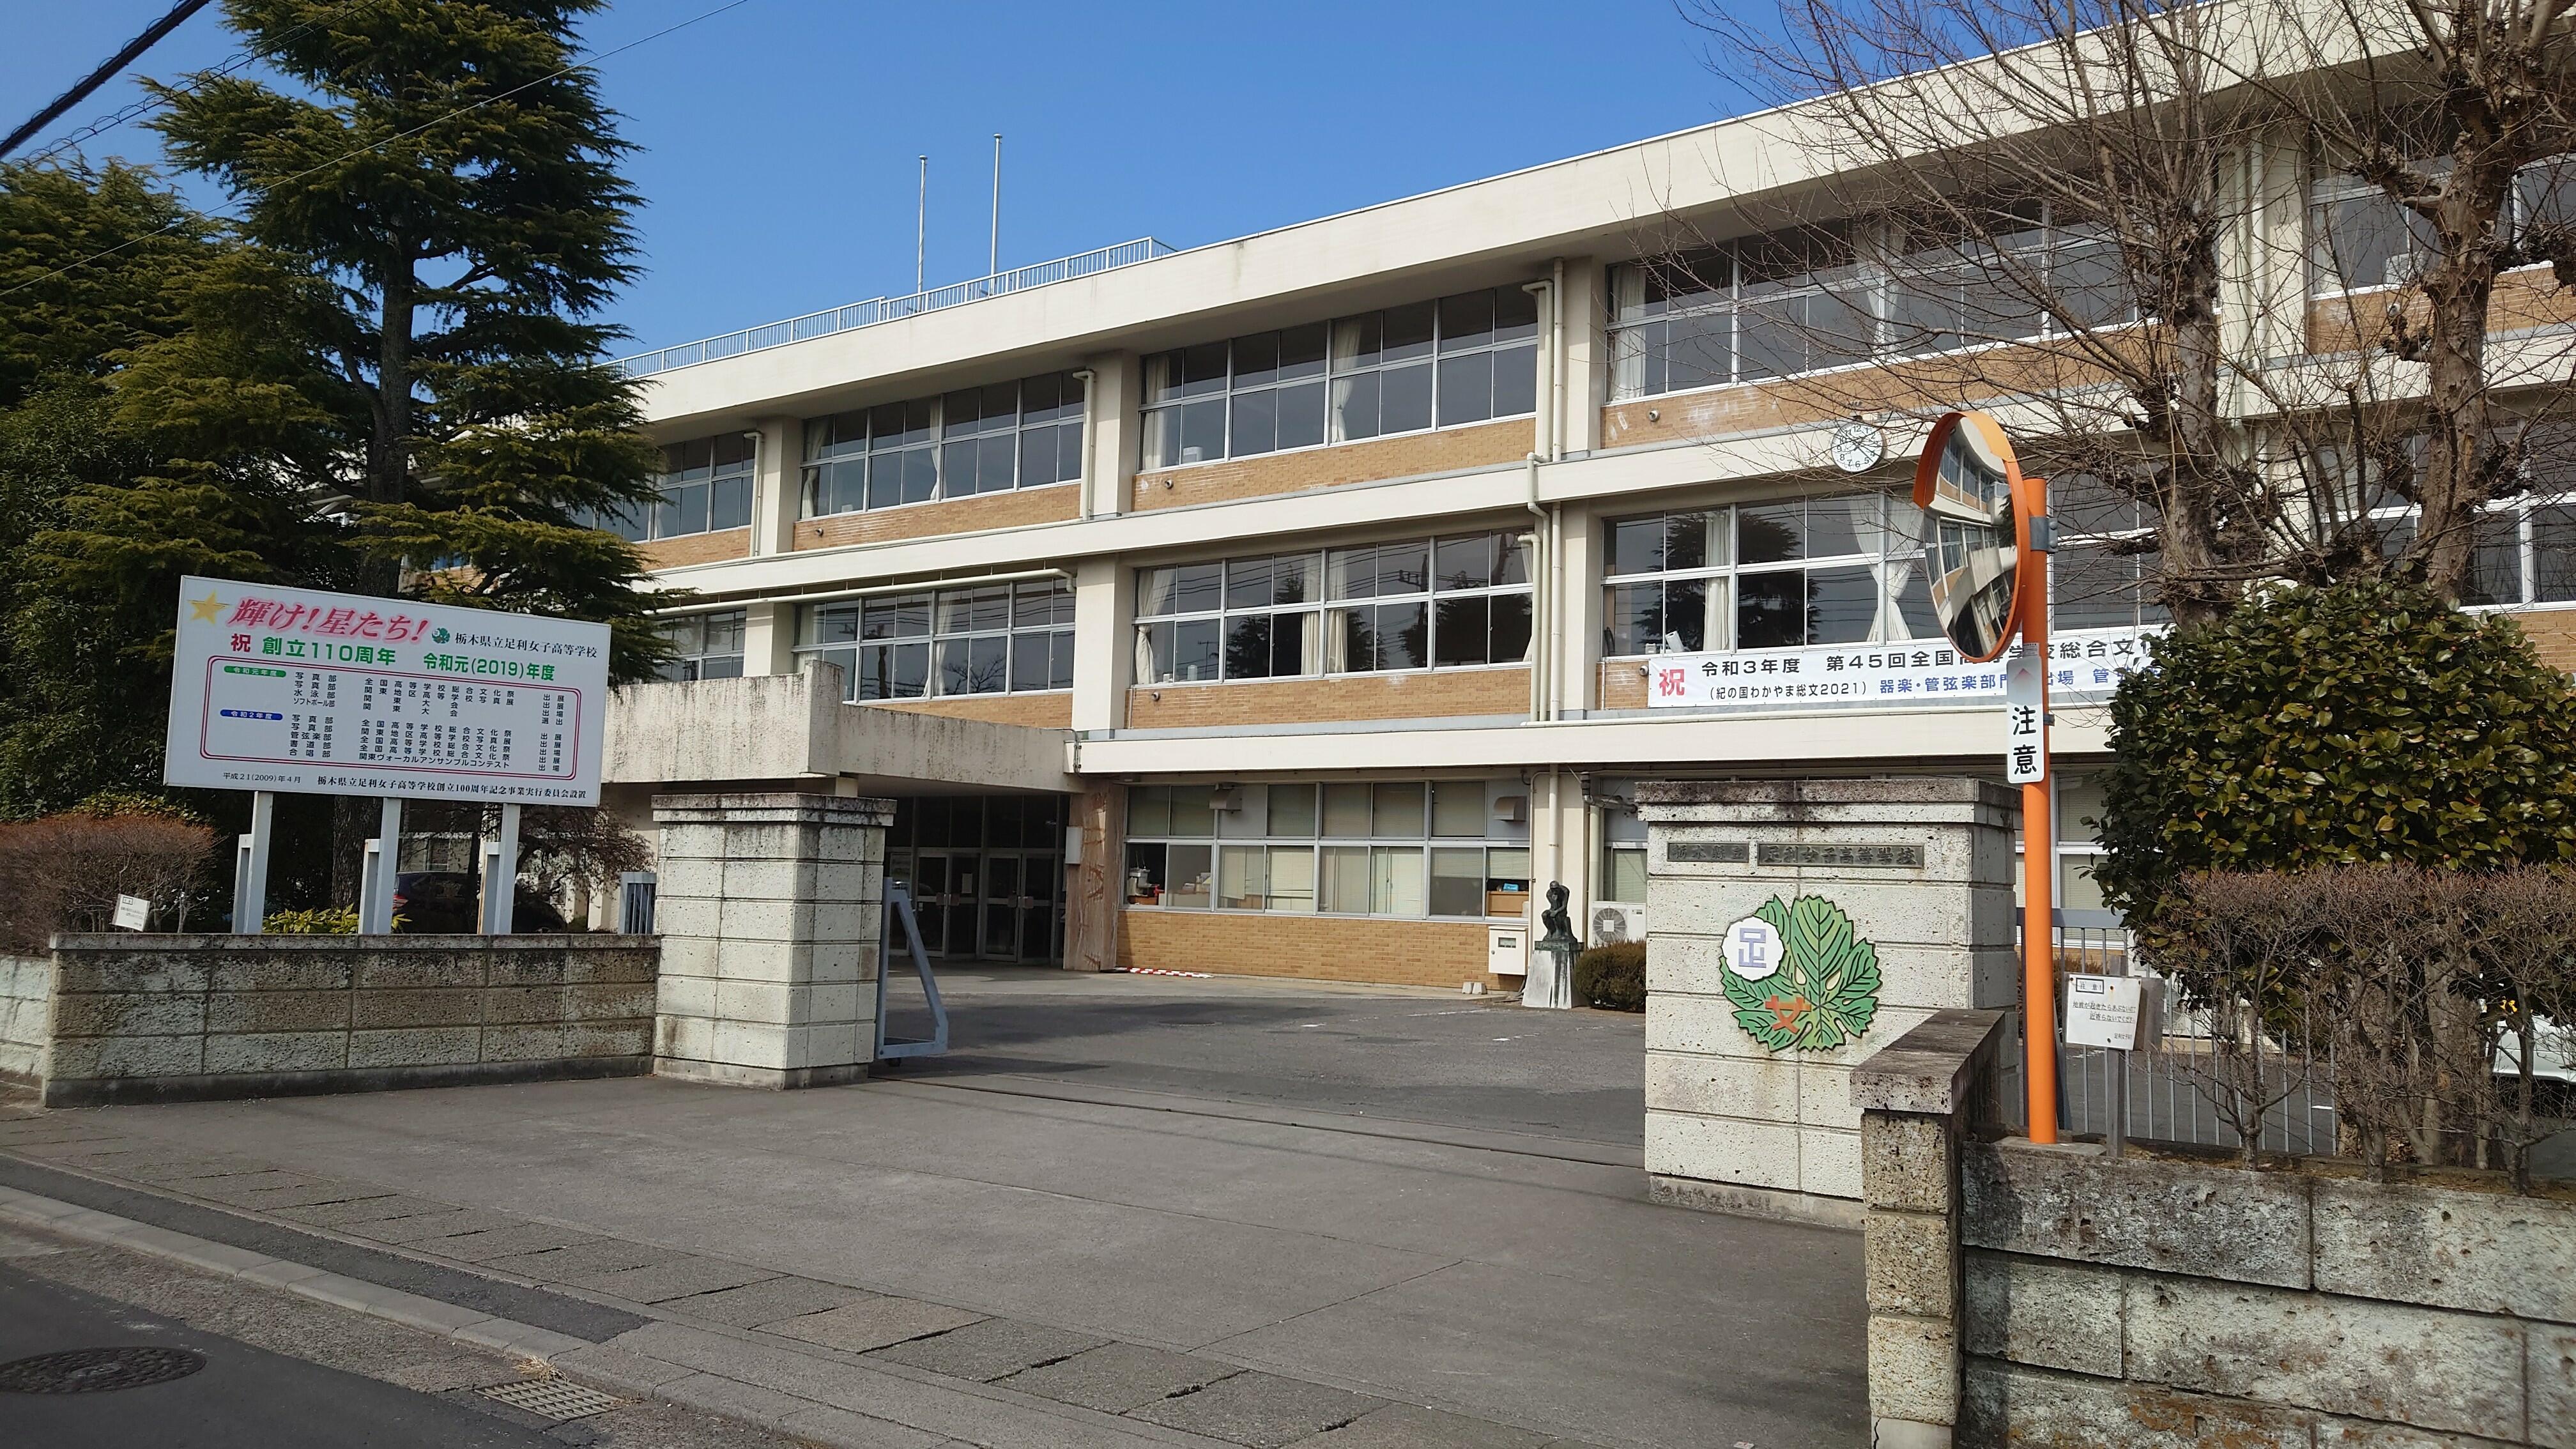 栃木県立足利女子高等学校 - 足利市有楽町/高校 | Yahoo!マップ